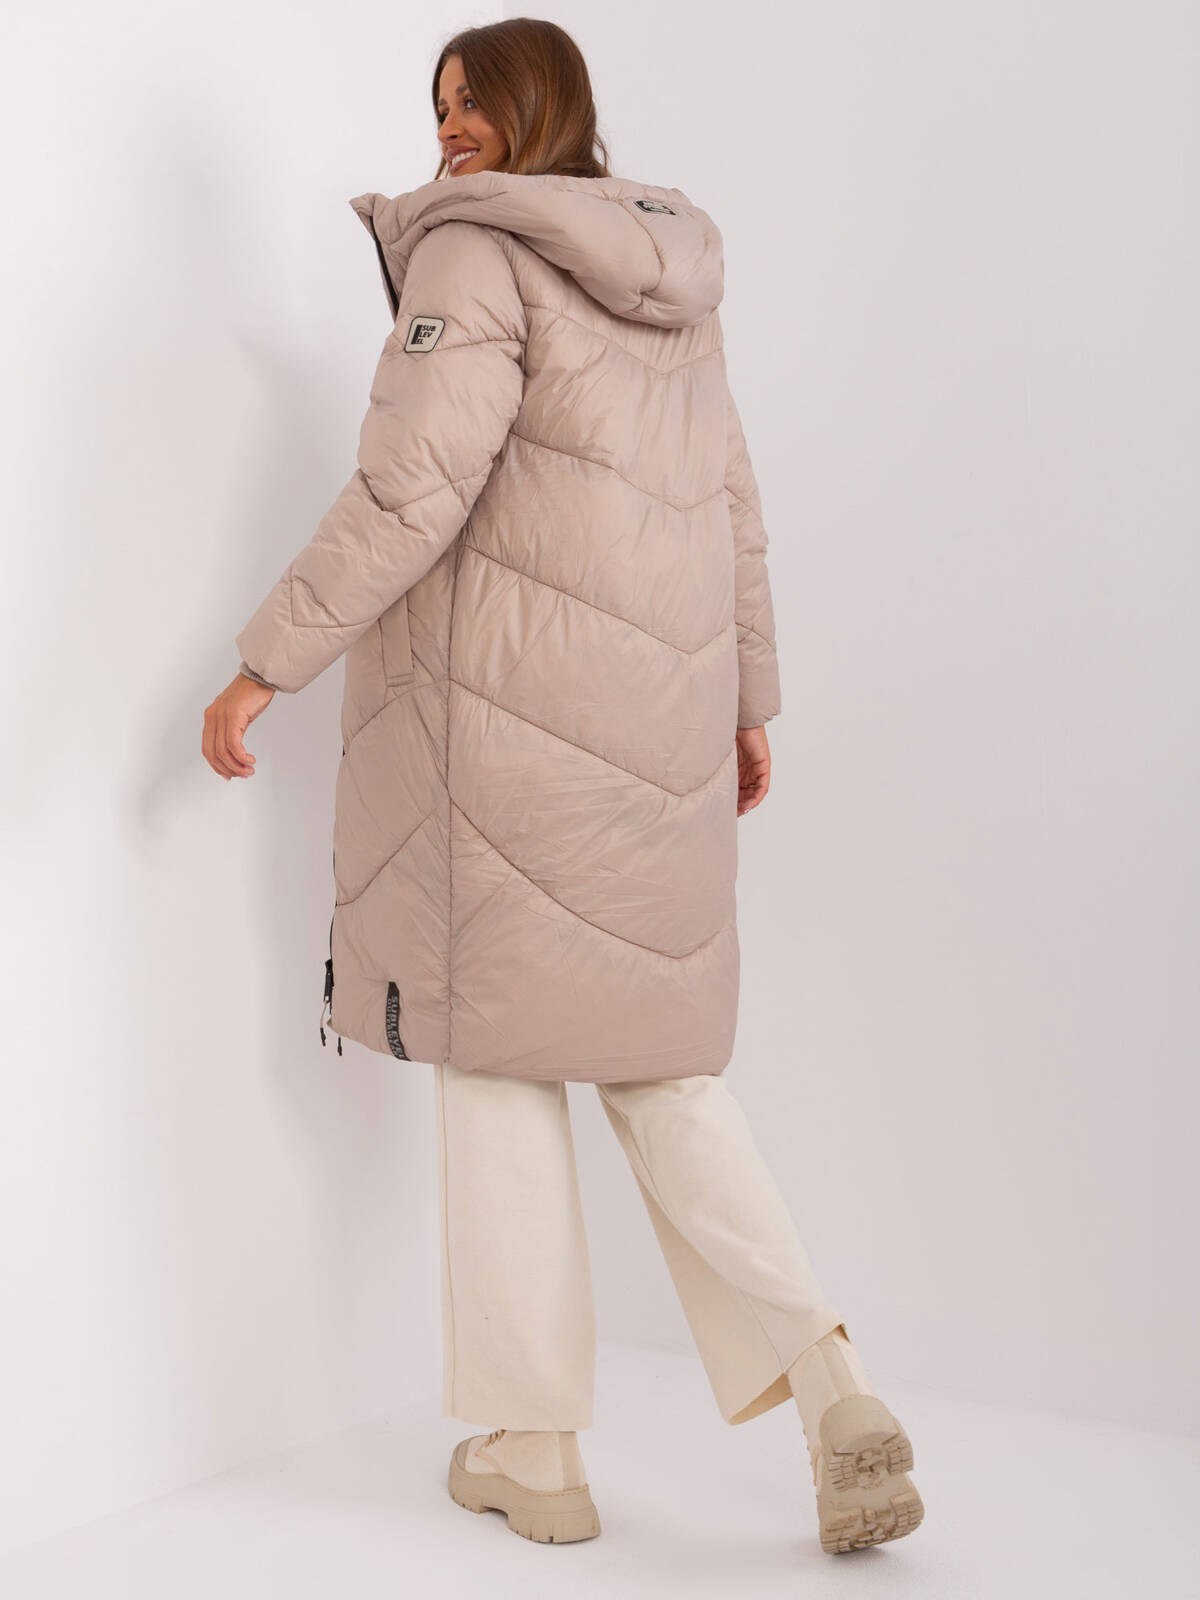 Płaszcz zimowa ciemny bezowy casual kurtka puchowa pikowana rękaw długi długość za kolano pikowanie kieszenie podszewka suwak